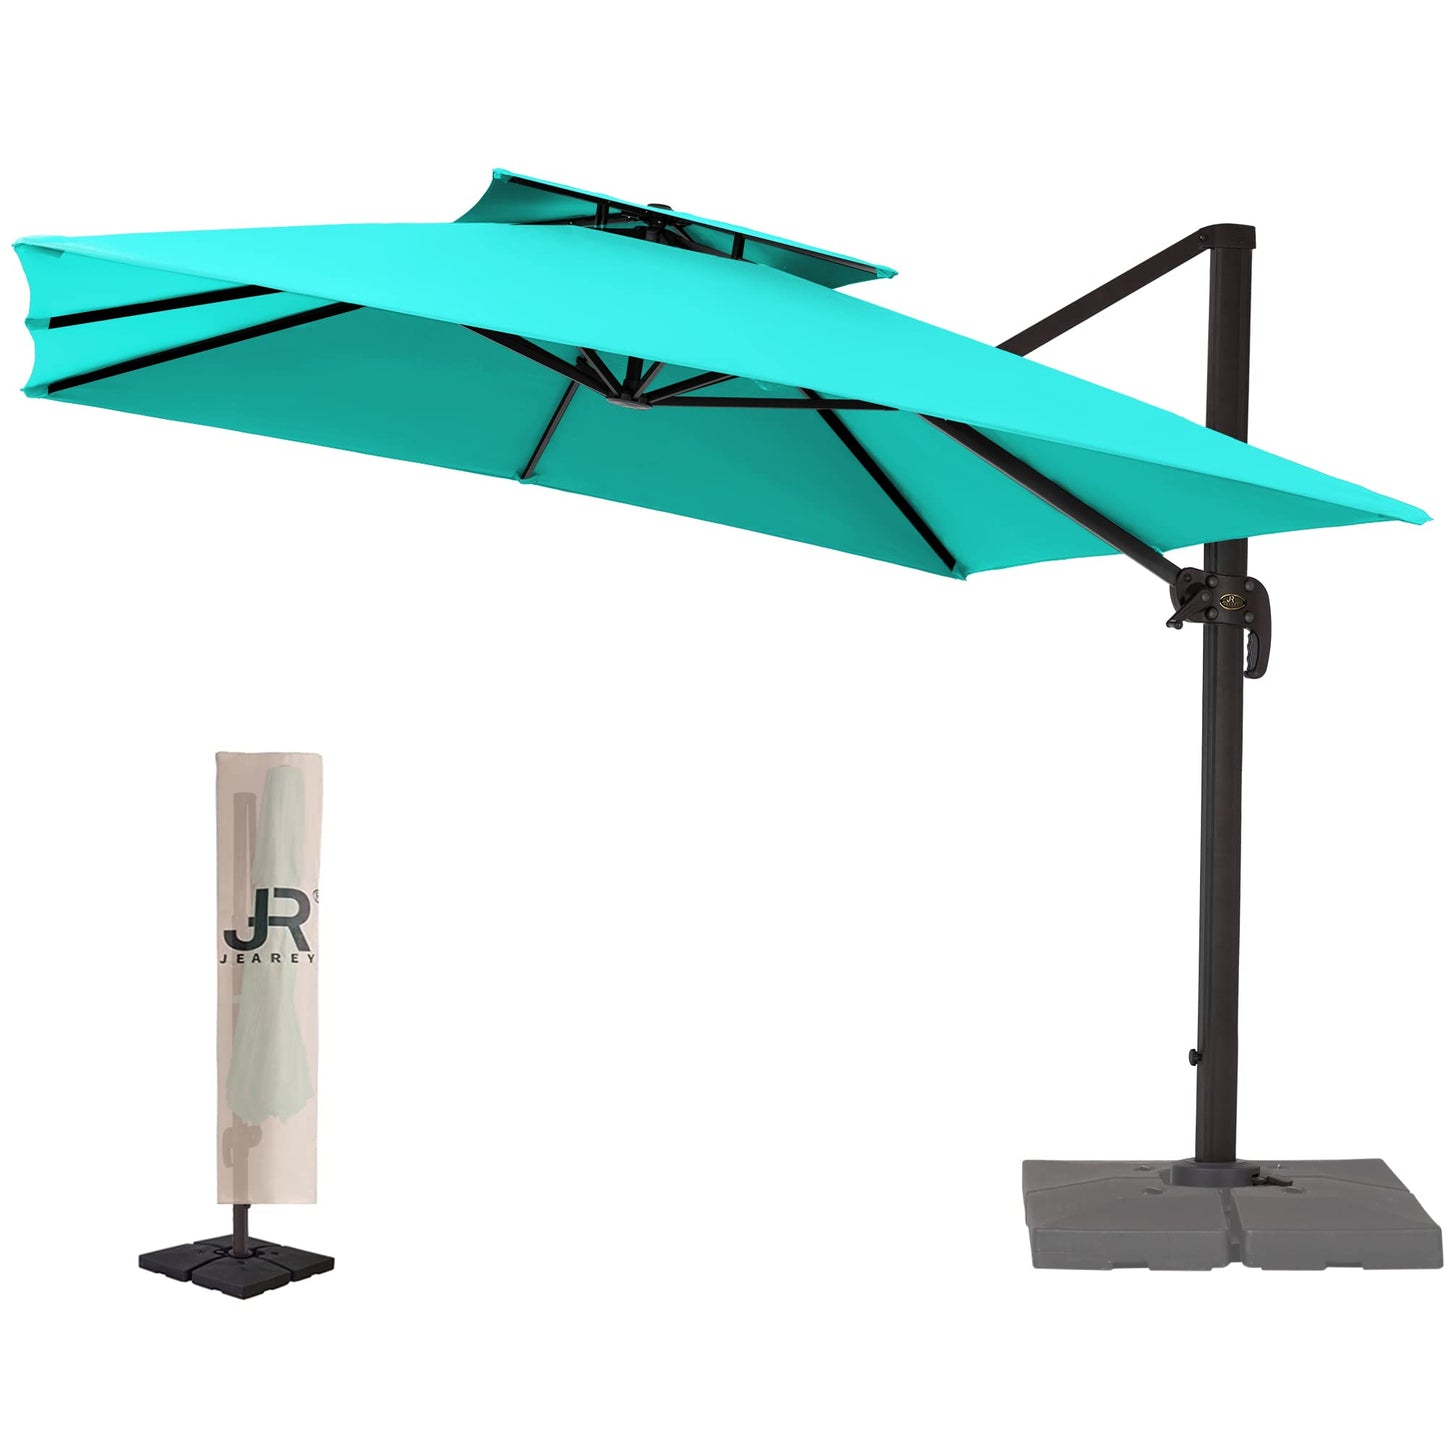 Square Cantilever Patio Umbrella 11FT Sky Blue